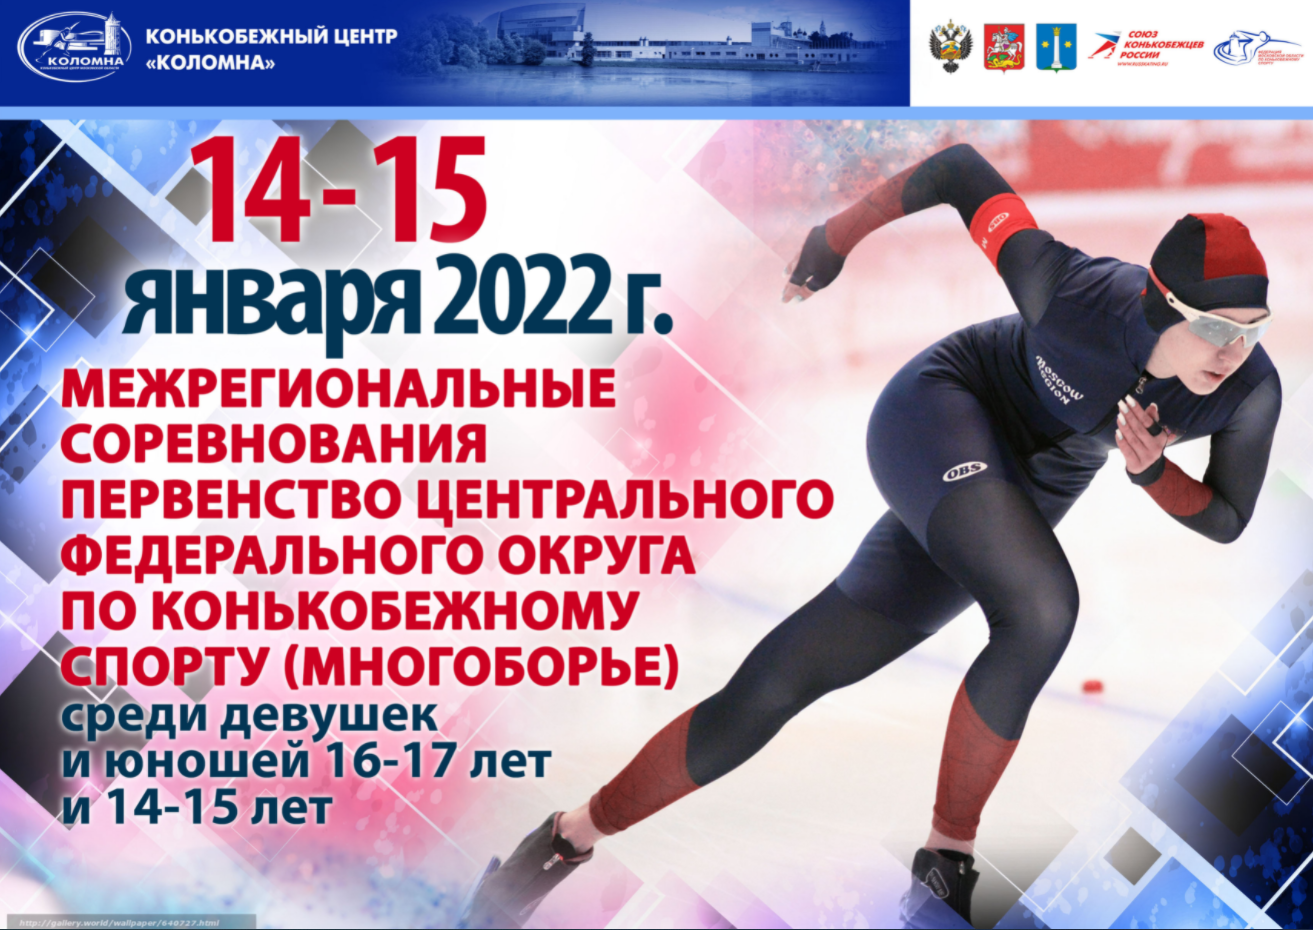 Коньки Коломна межрегиональные соревнования афиша 13 января 2022